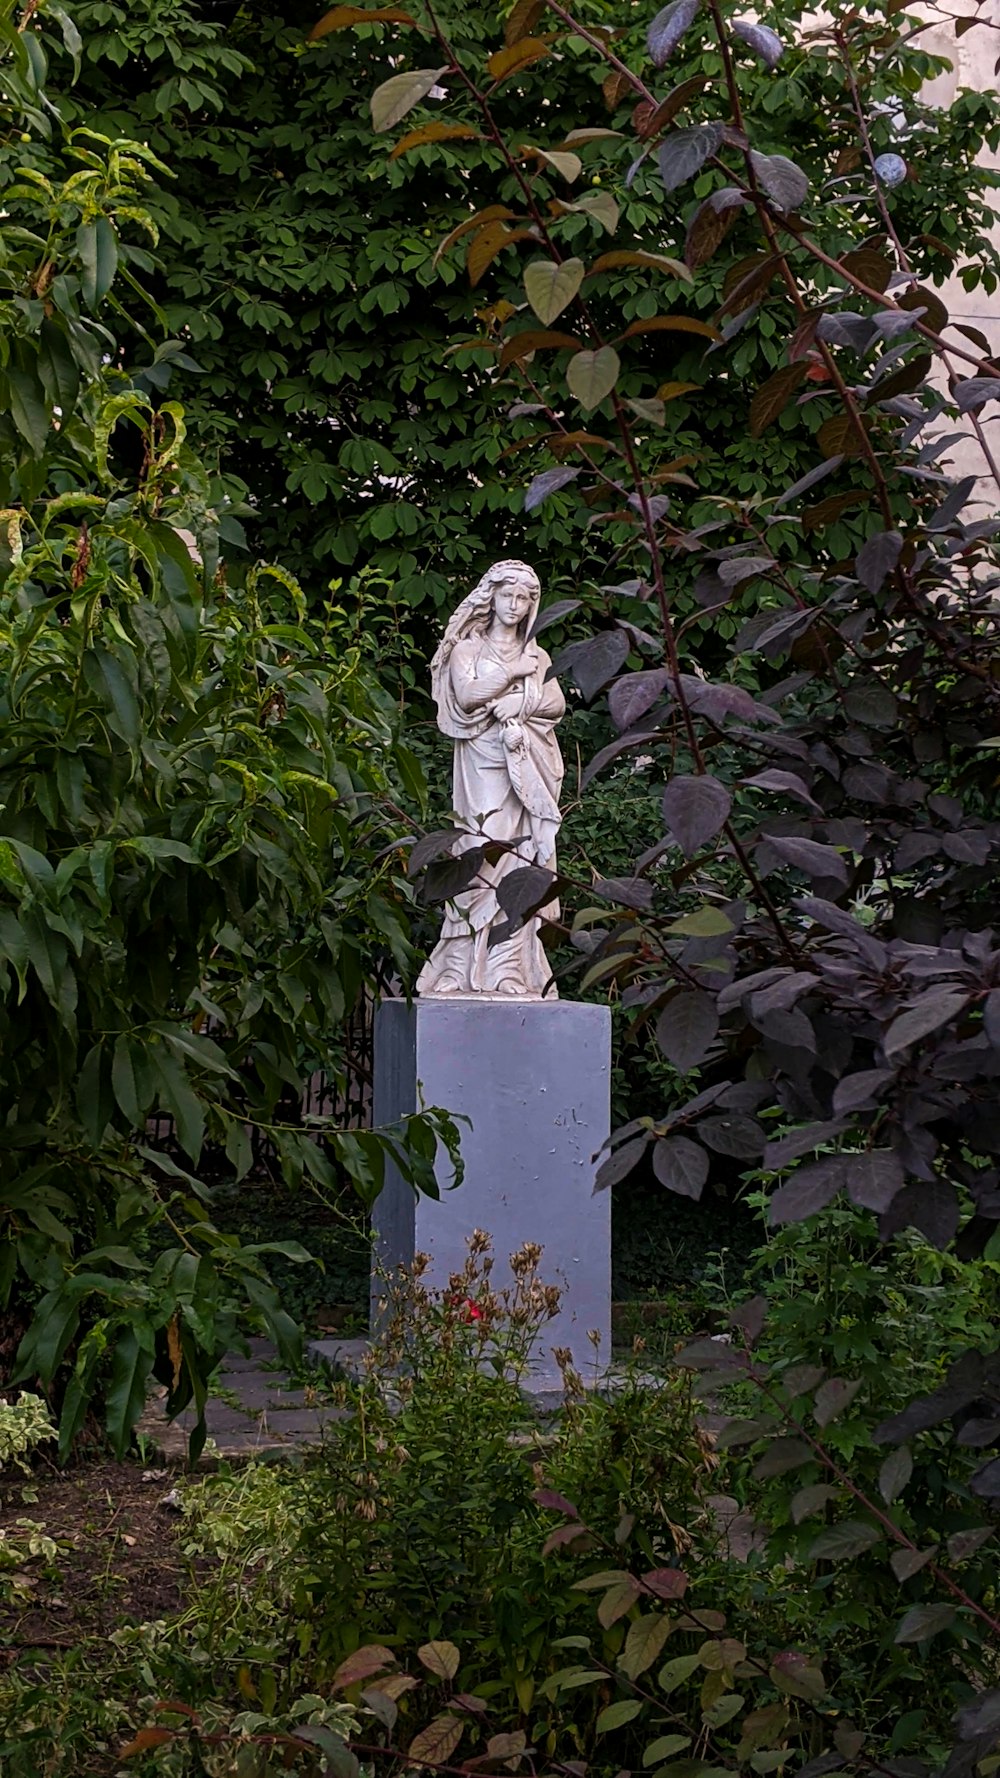 donna in vestito statua vicino a piante verdi